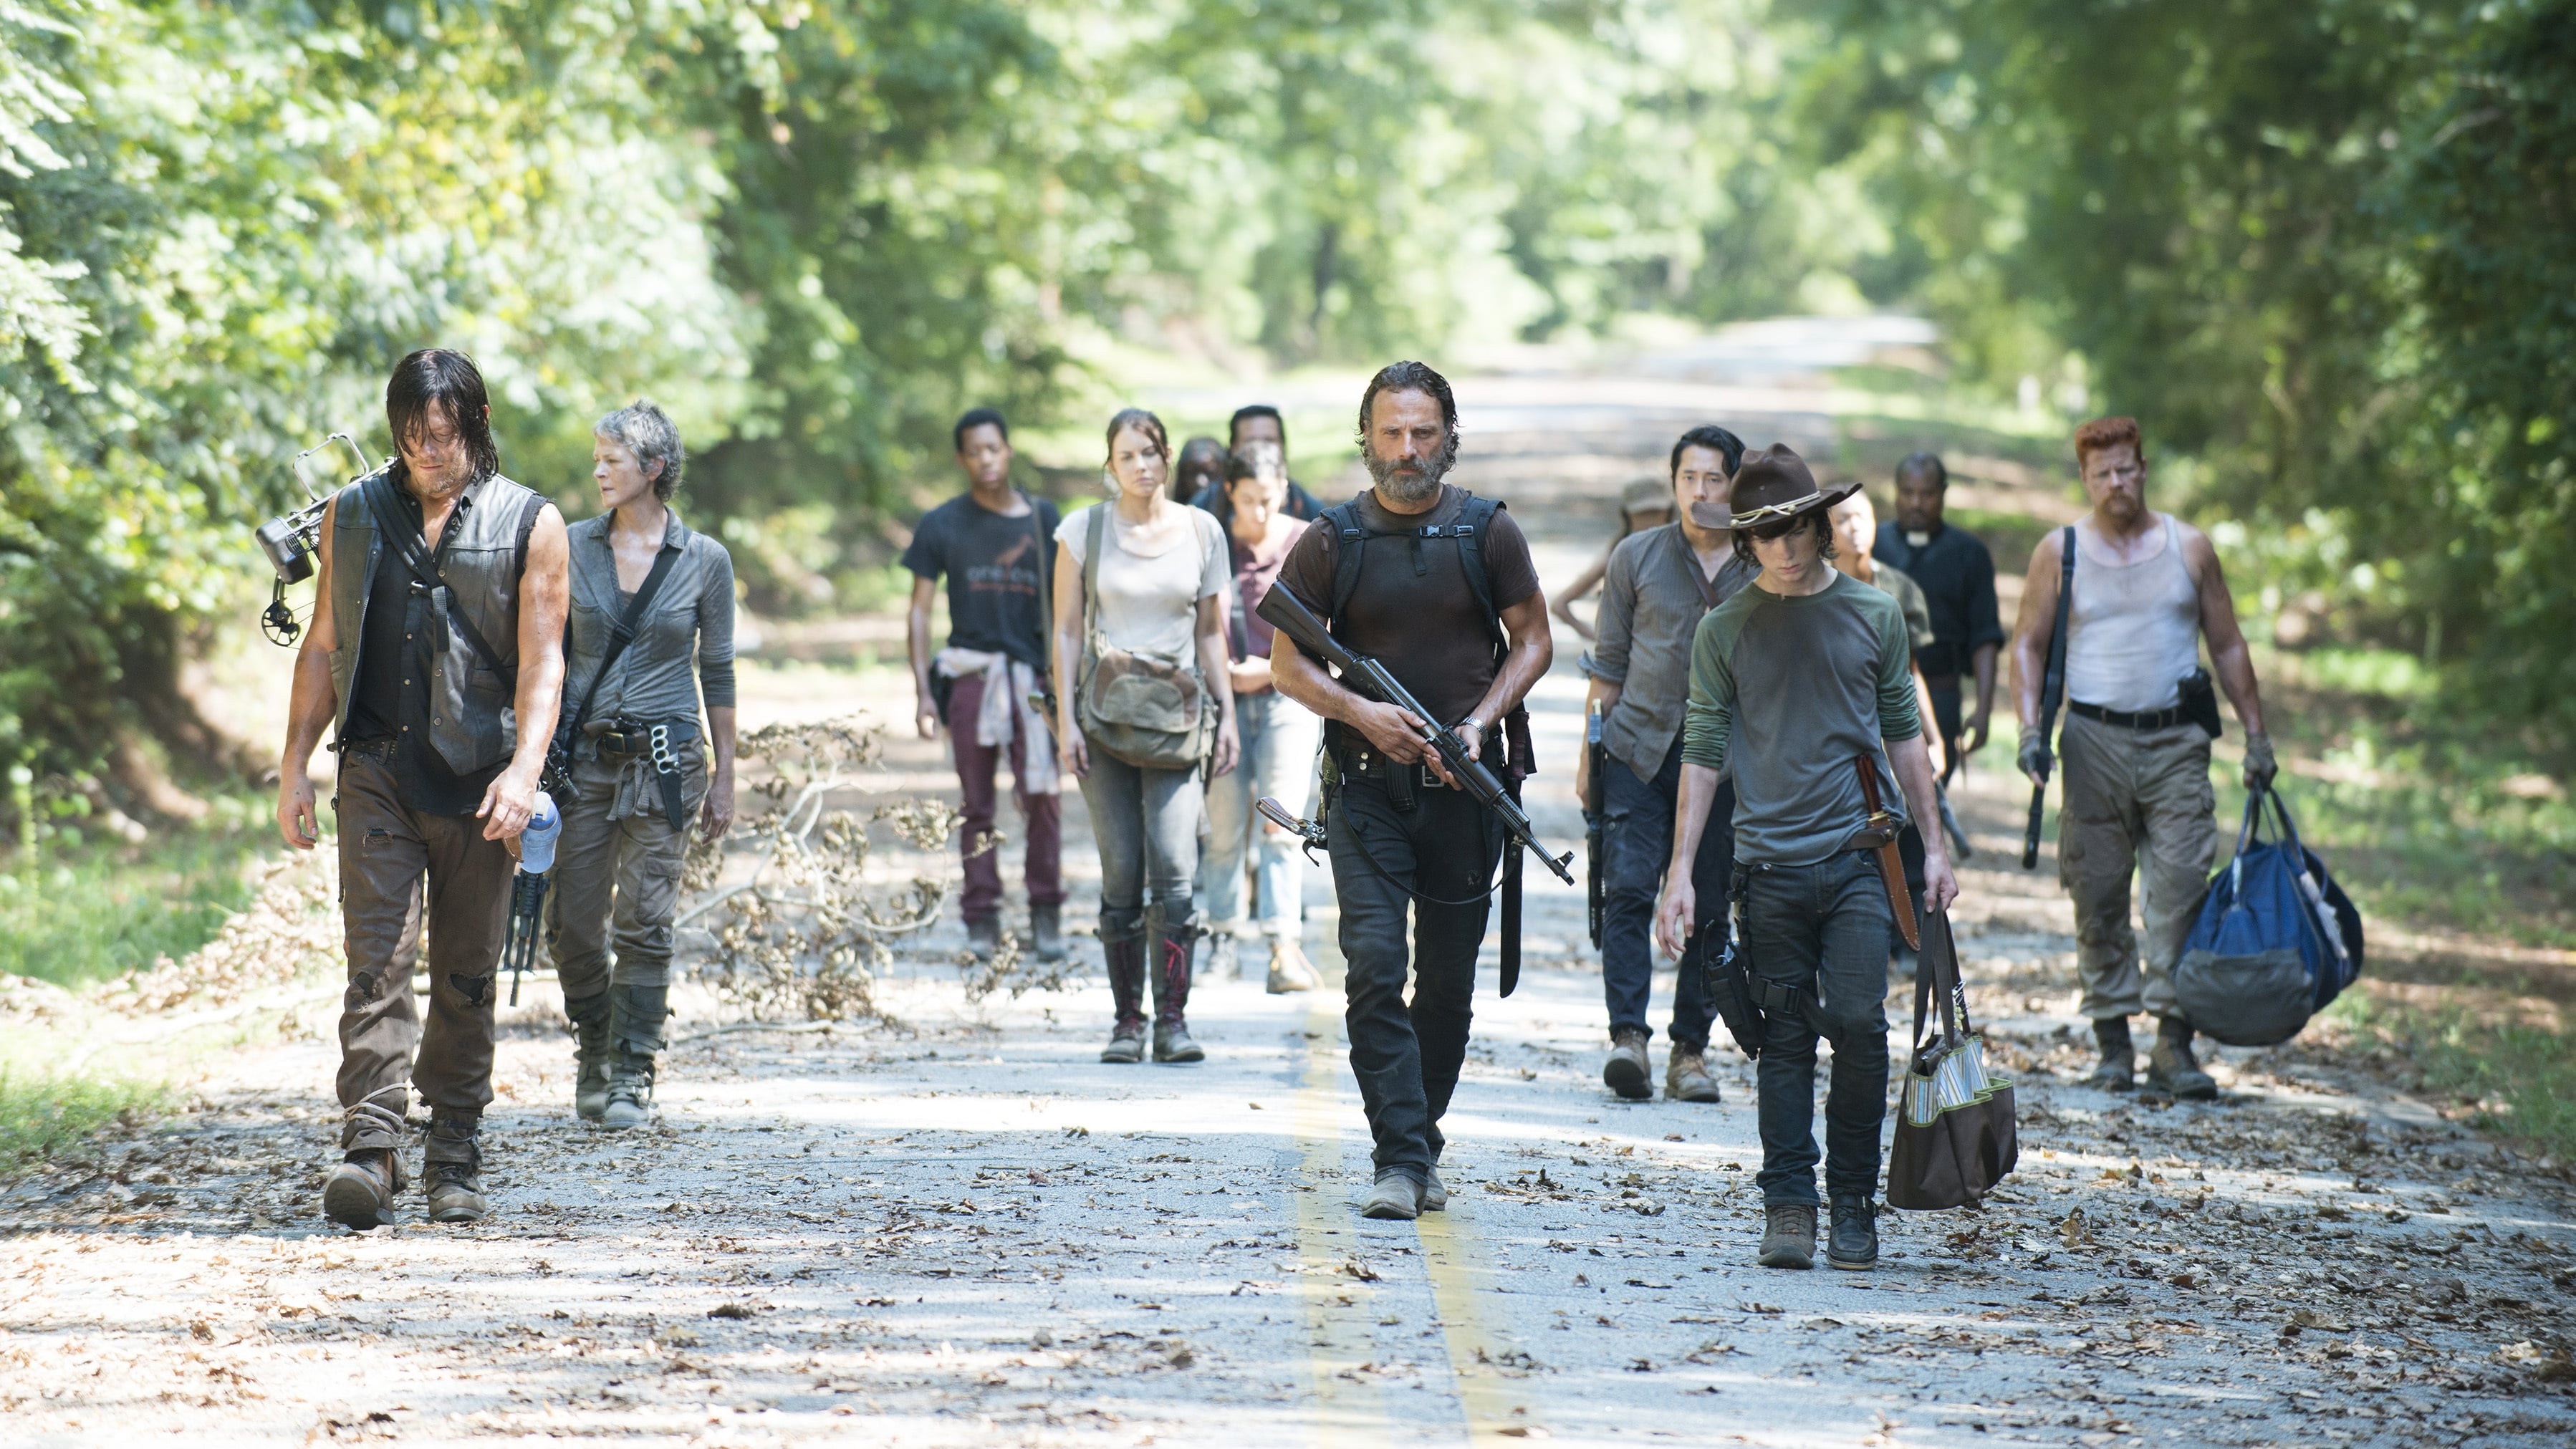 Download Film Walking Dead Season 5 Sub Indo Terbaru